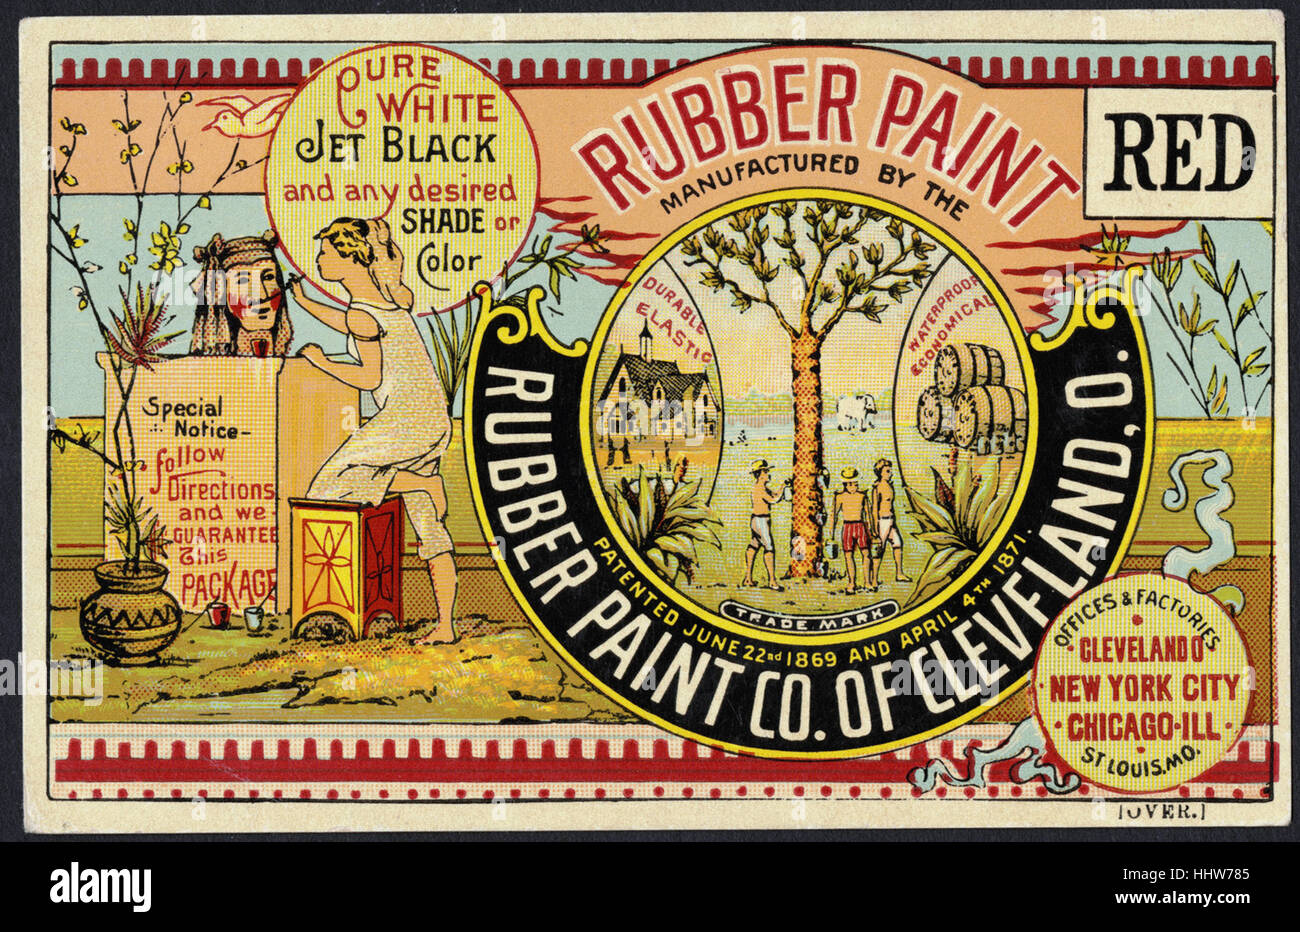 Rubber-Paint Rubber Paint Co. von Cleveland, O. Pure weiße Fabrikat, gewünschte tiefschwarz und alle Schatten oder Farbe. (vorne) - Home Möbel Handel Karten Stockfoto